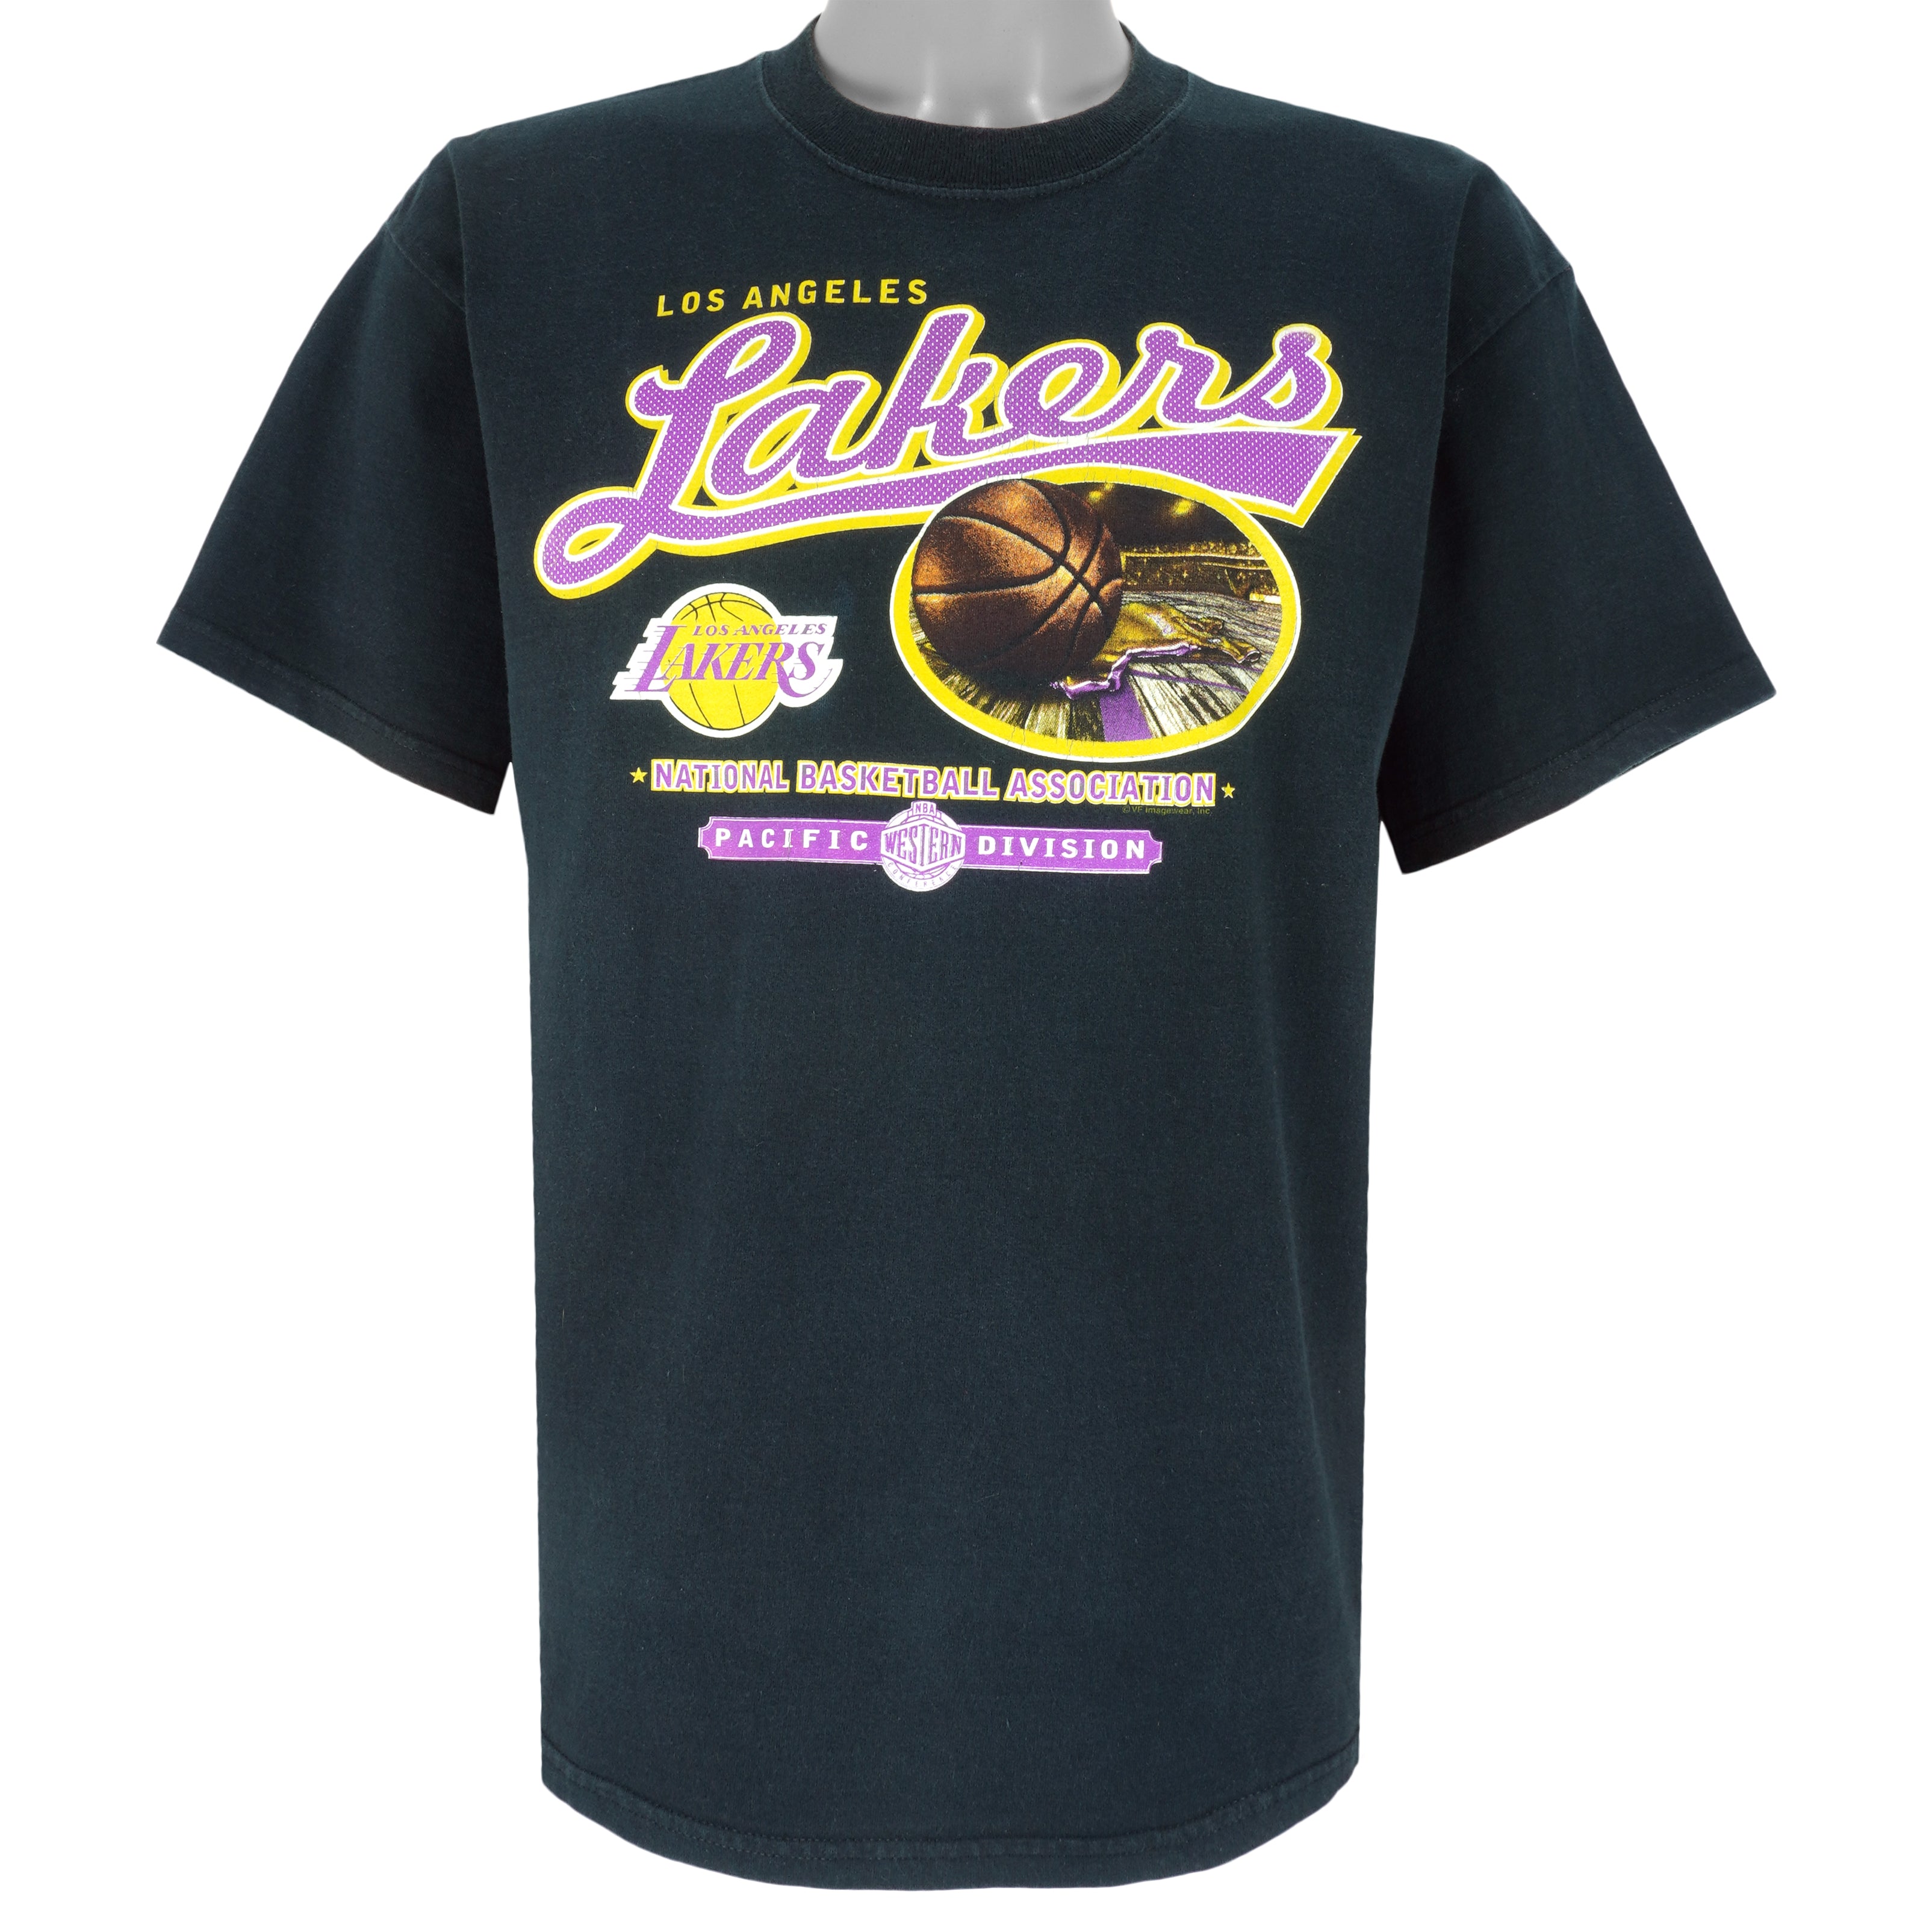 Los Angeles Lakers Jerseys & Teamwear, NBA Merch